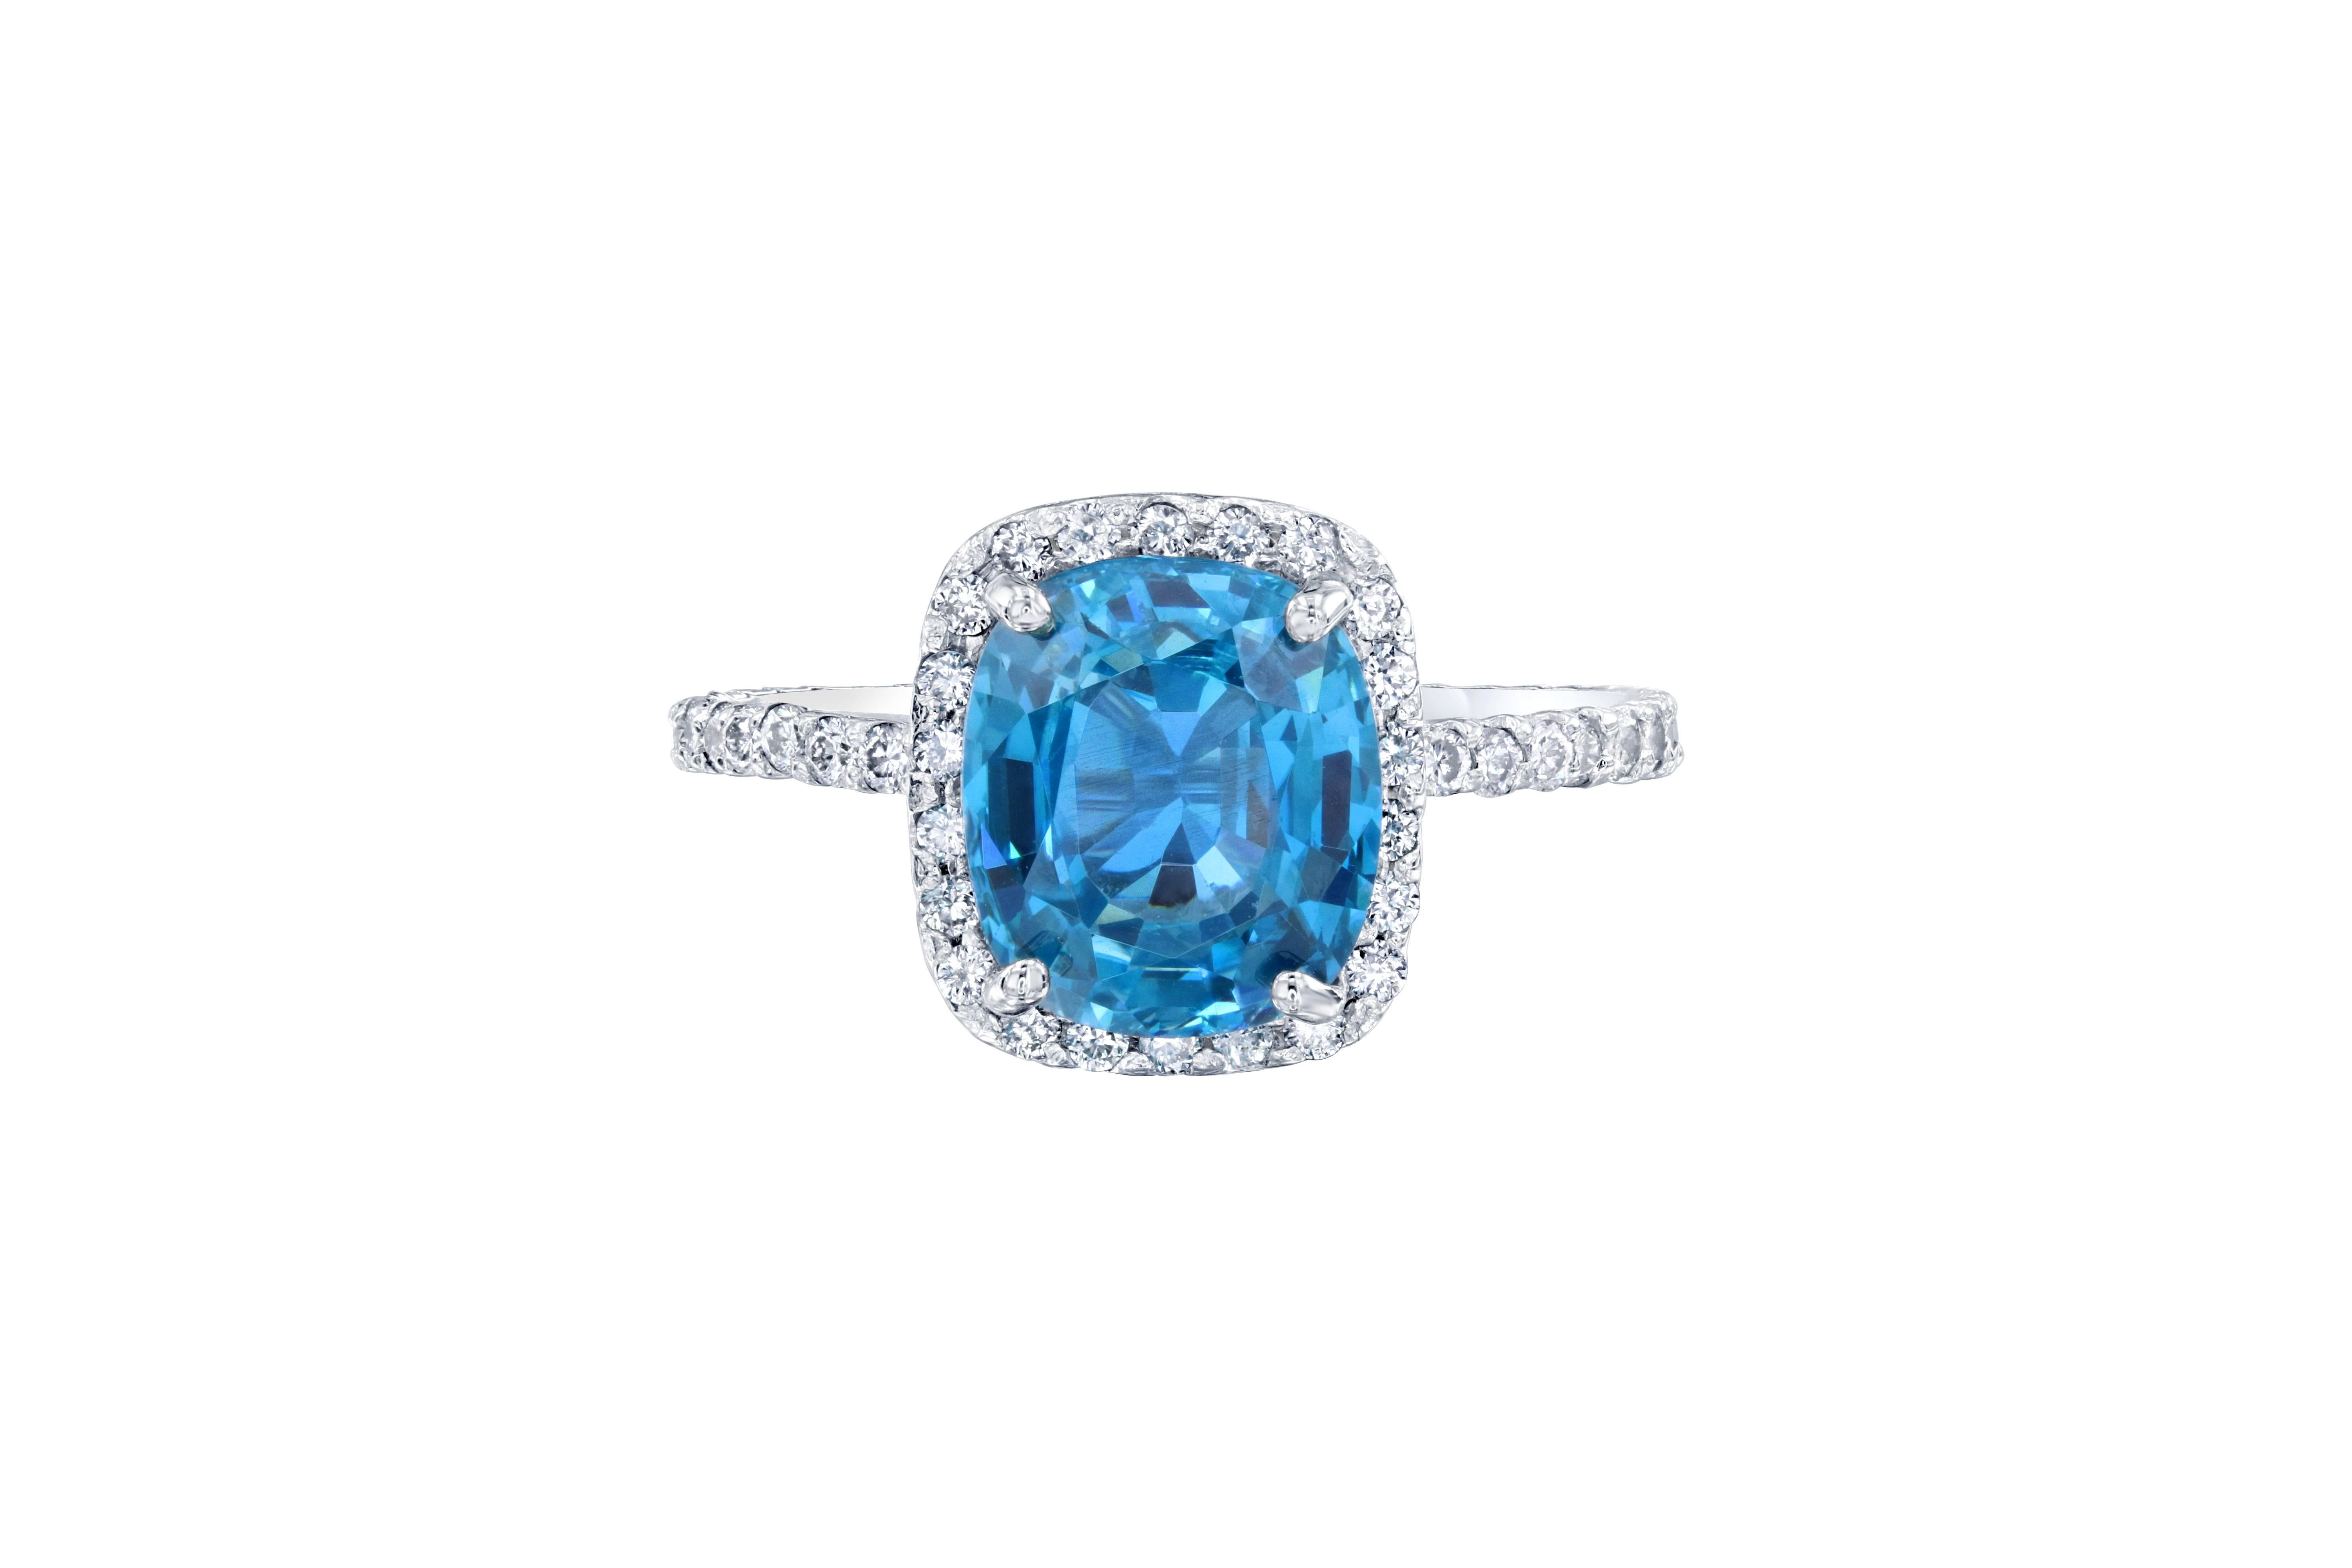 Dieser wunderschöne Halo-Ring hat einen blauen Zirkon von 3,73 Karat, der in der Mitte des Rings gefasst ist. Ein Blauer Zirkon ist ein Naturstein, der in Vietnam abgebaut wird. Der Ring ist mit 54 Diamanten im Brillantschliff mit einem Gewicht von